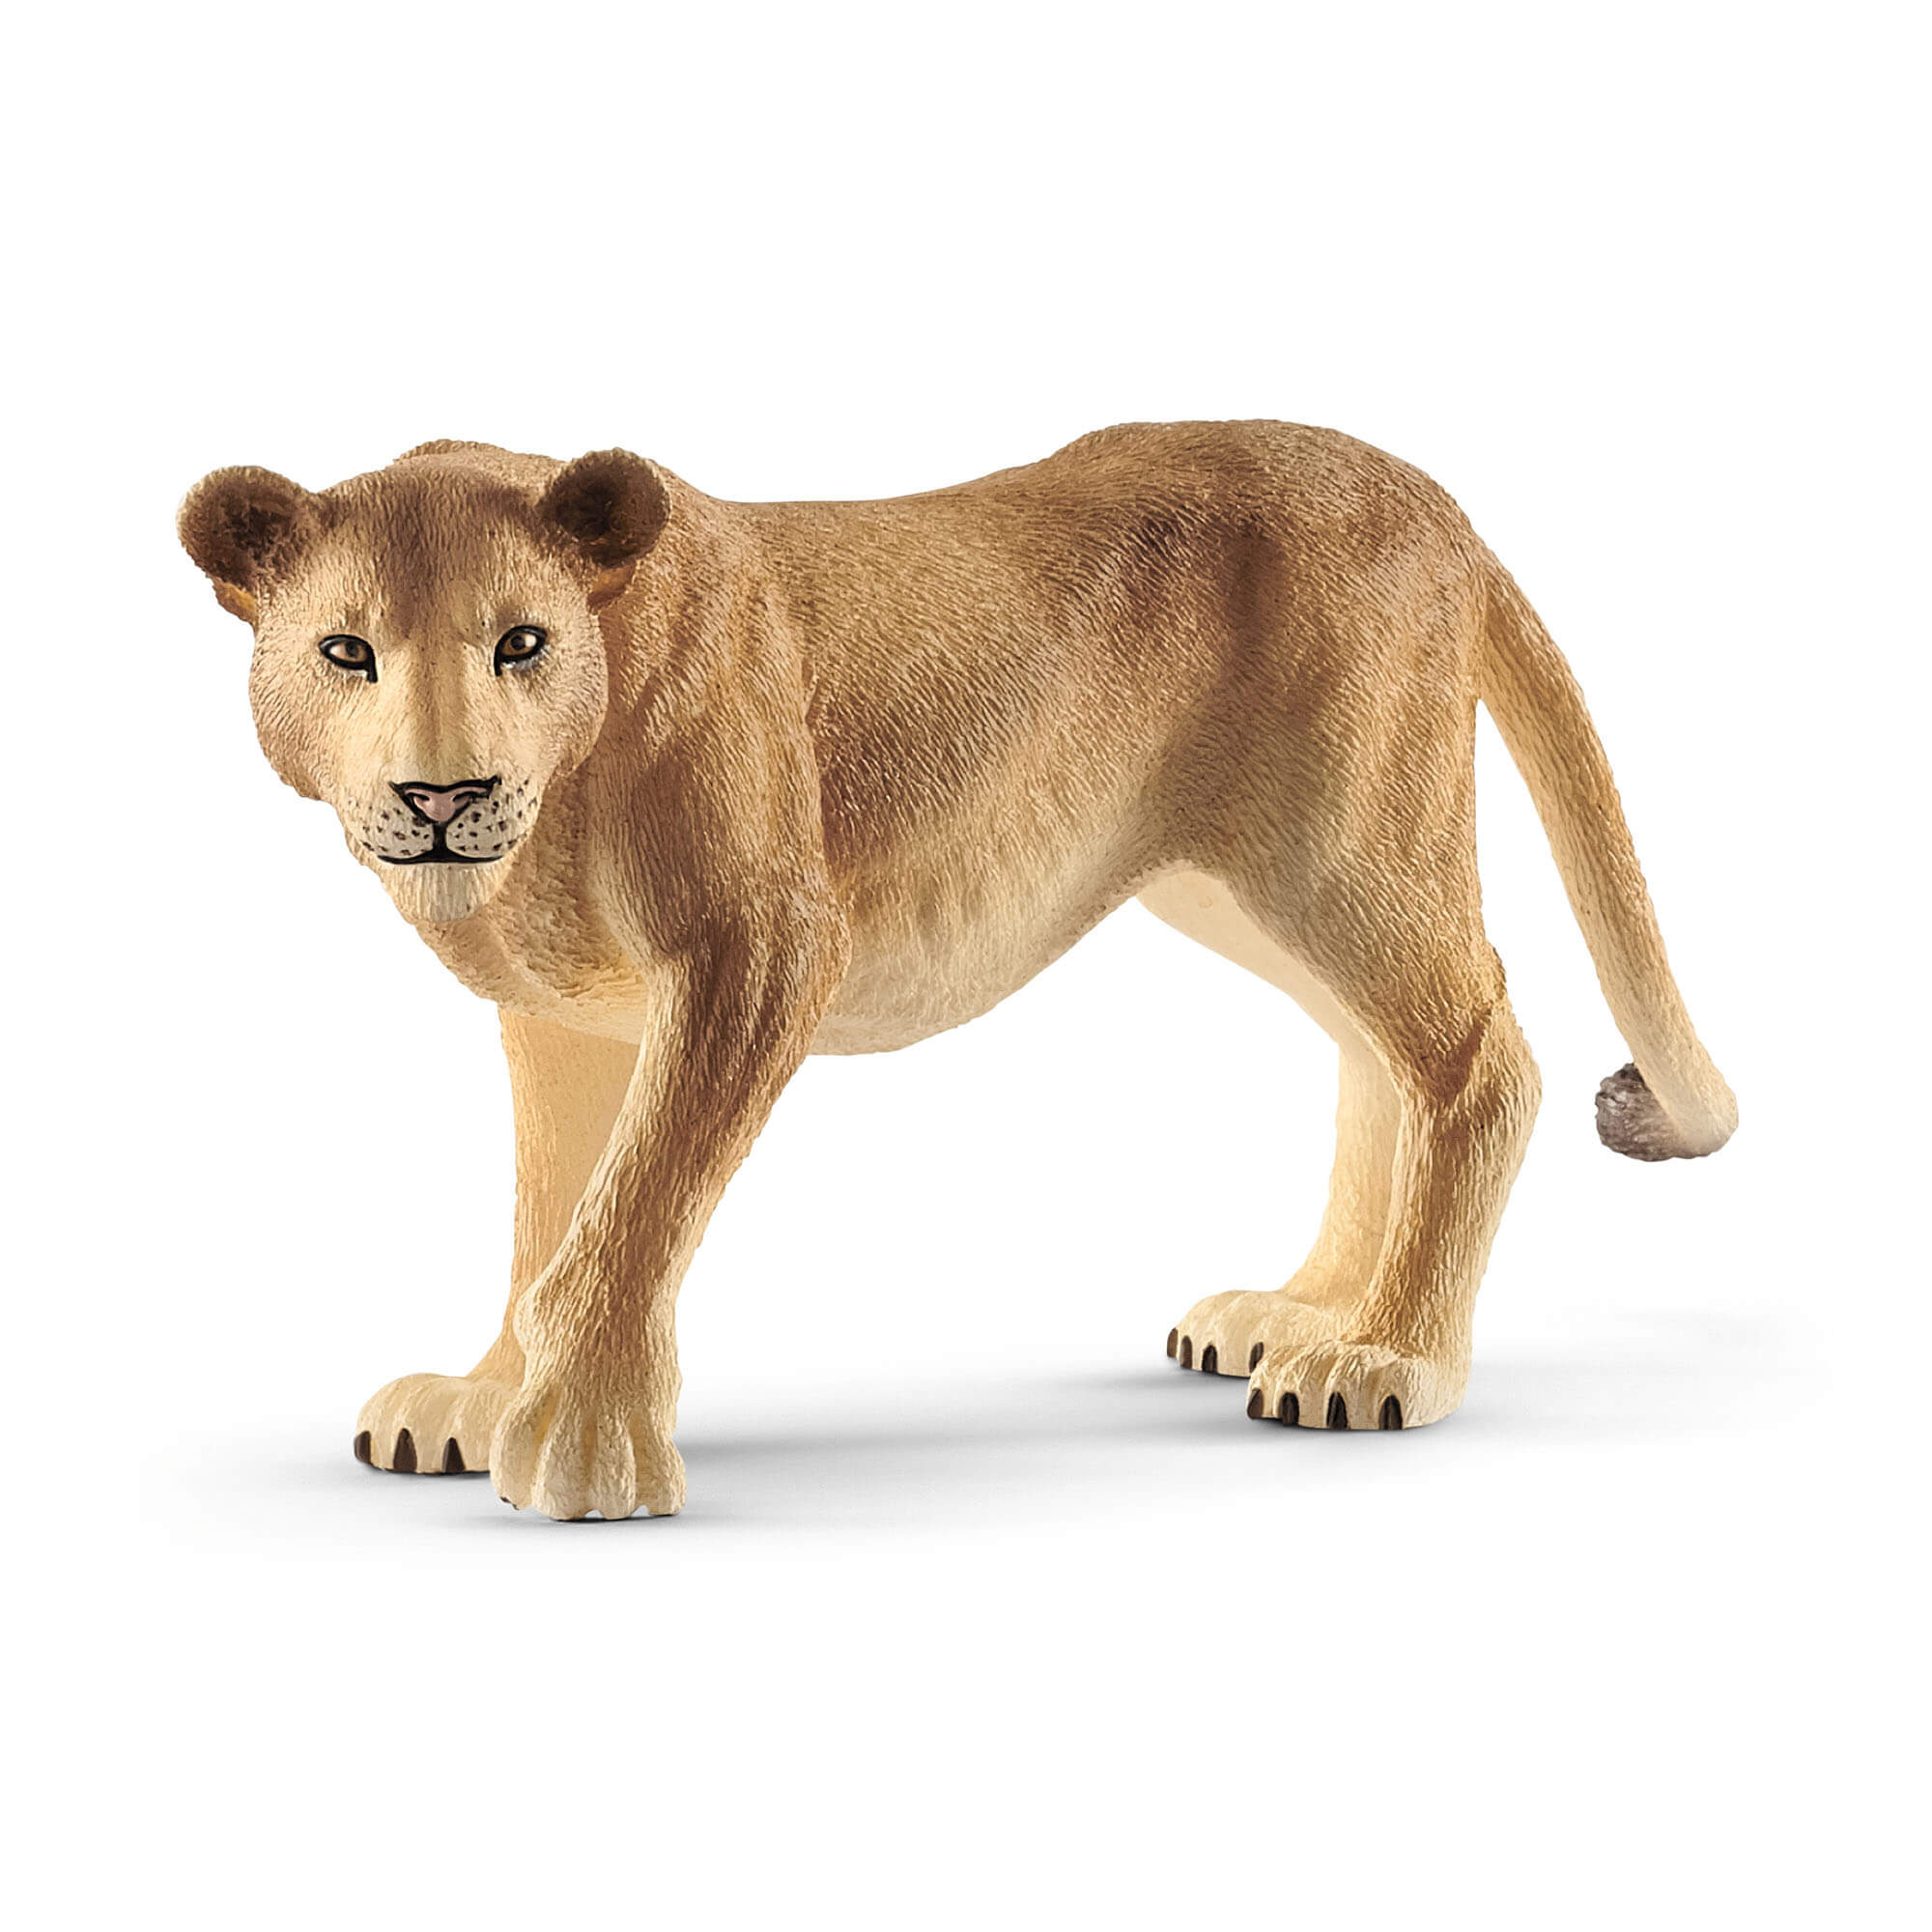 Schleich Wild Life Lioness Animal Figure